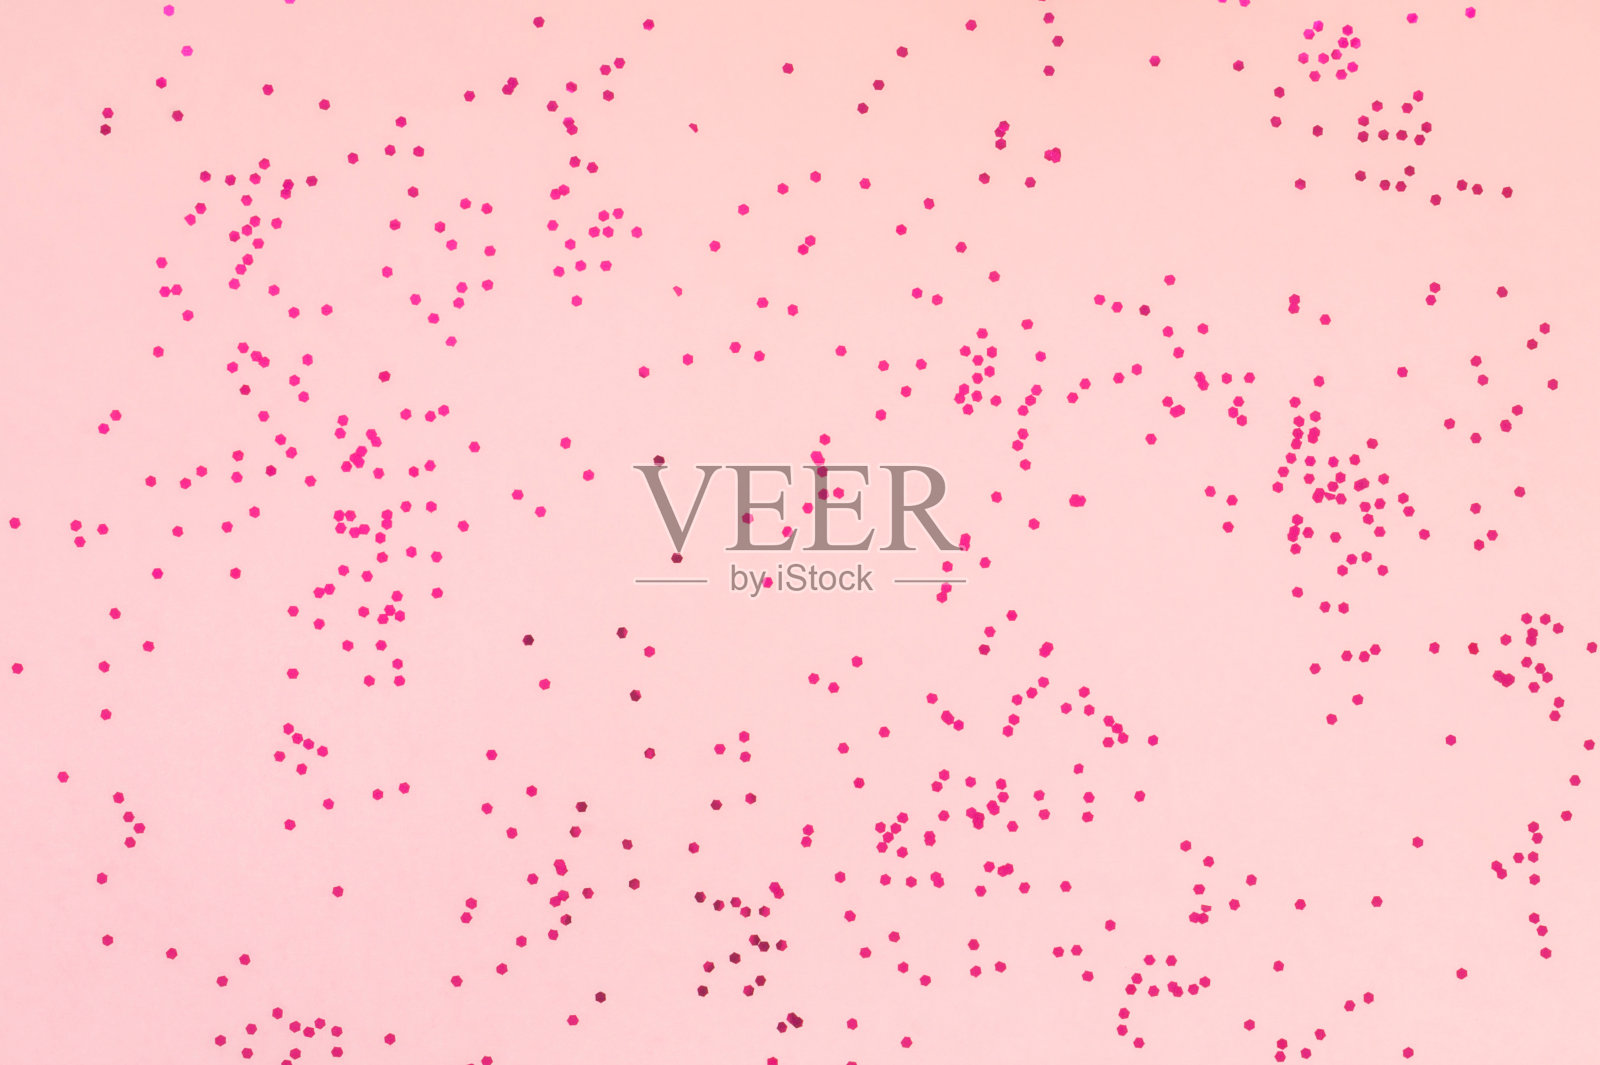 亮粉色的五彩纸屑点缀在柔和的粉红色背景上。节日色彩柔和的背景。庆祝活动的概念。俯视图，平放。水平插画图片素材